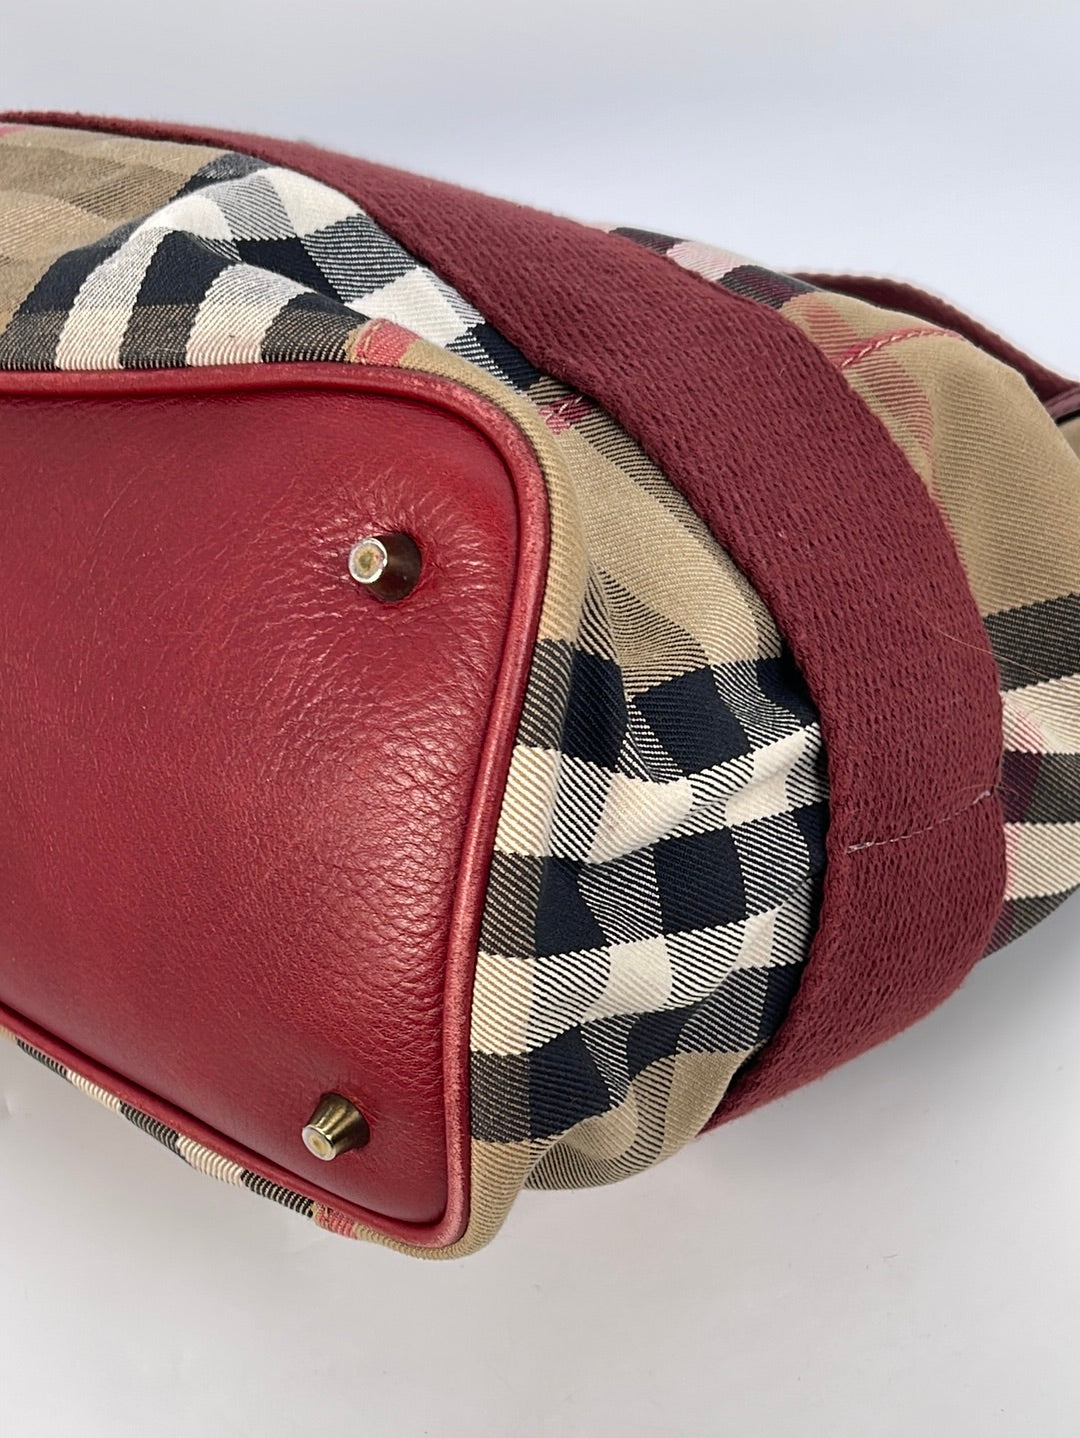 Burberry Vintage Burberrys Dome Handbag - AWL2311